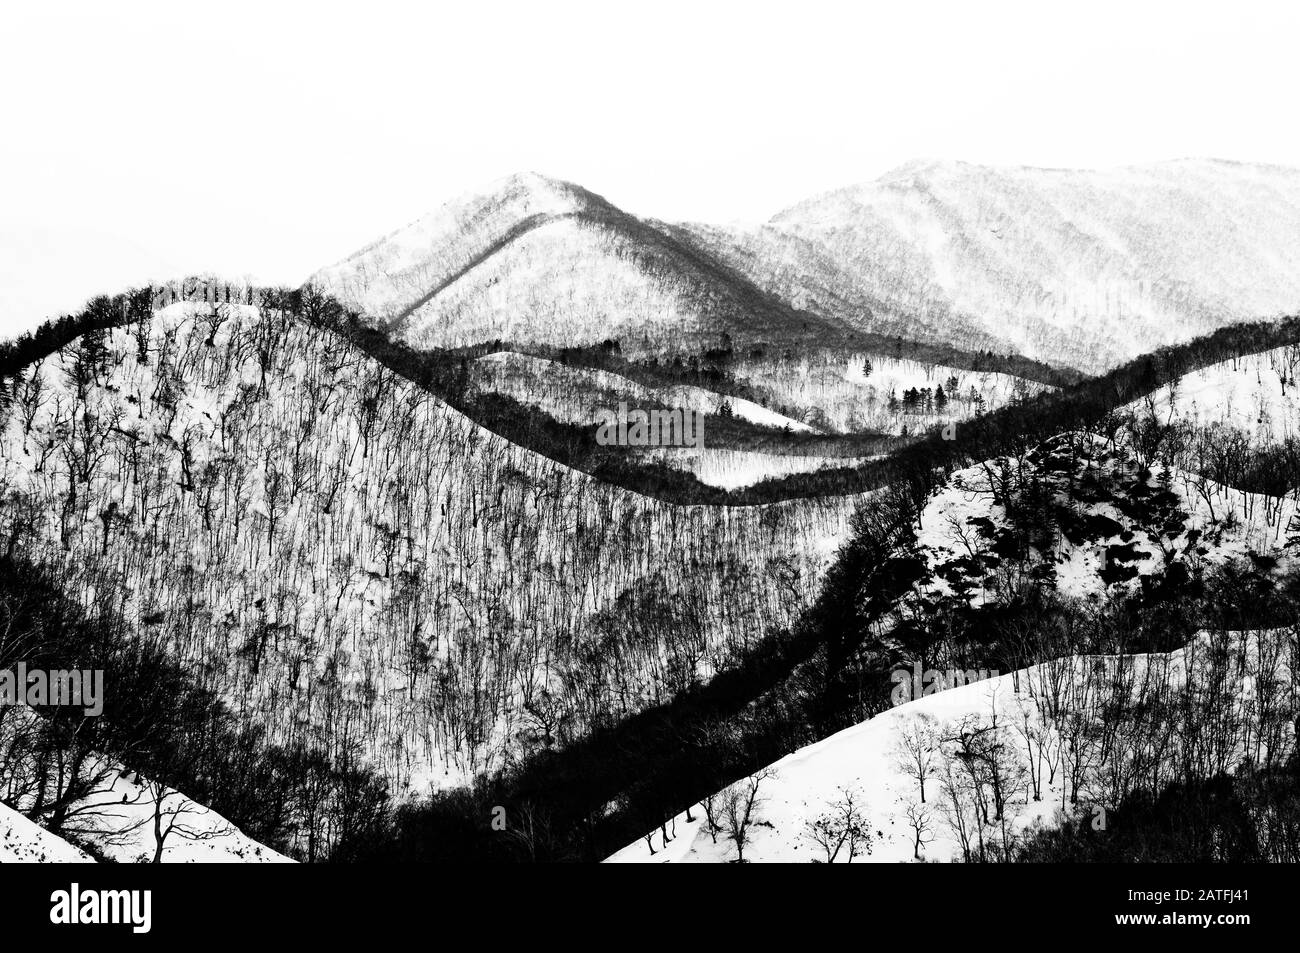 Japan, Hokkaido, Rausu, Mountains in winter Stock Photo